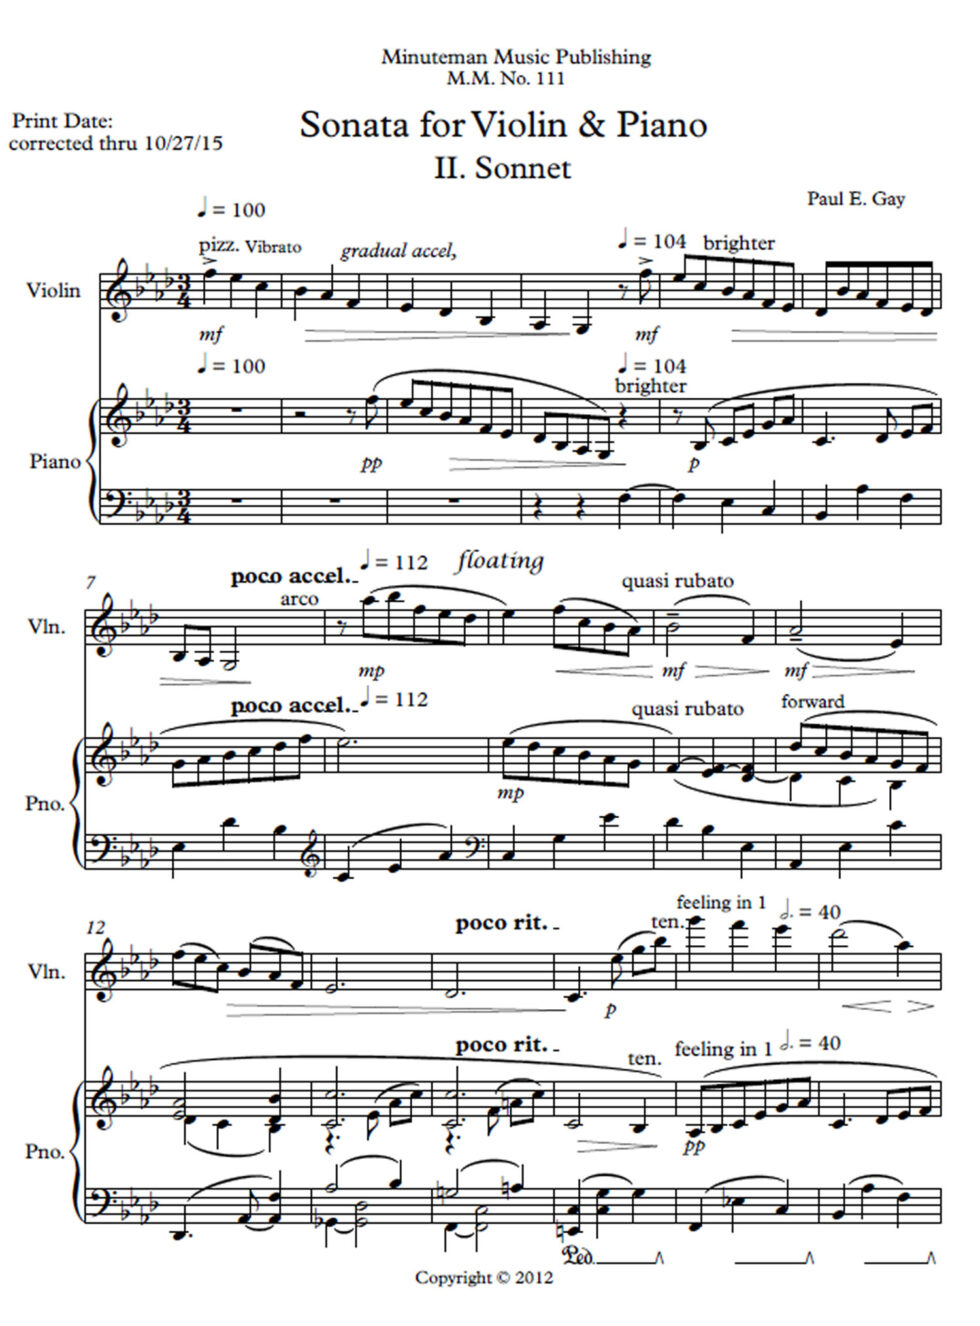 Sonata for Violin and Piano, II. Full Score